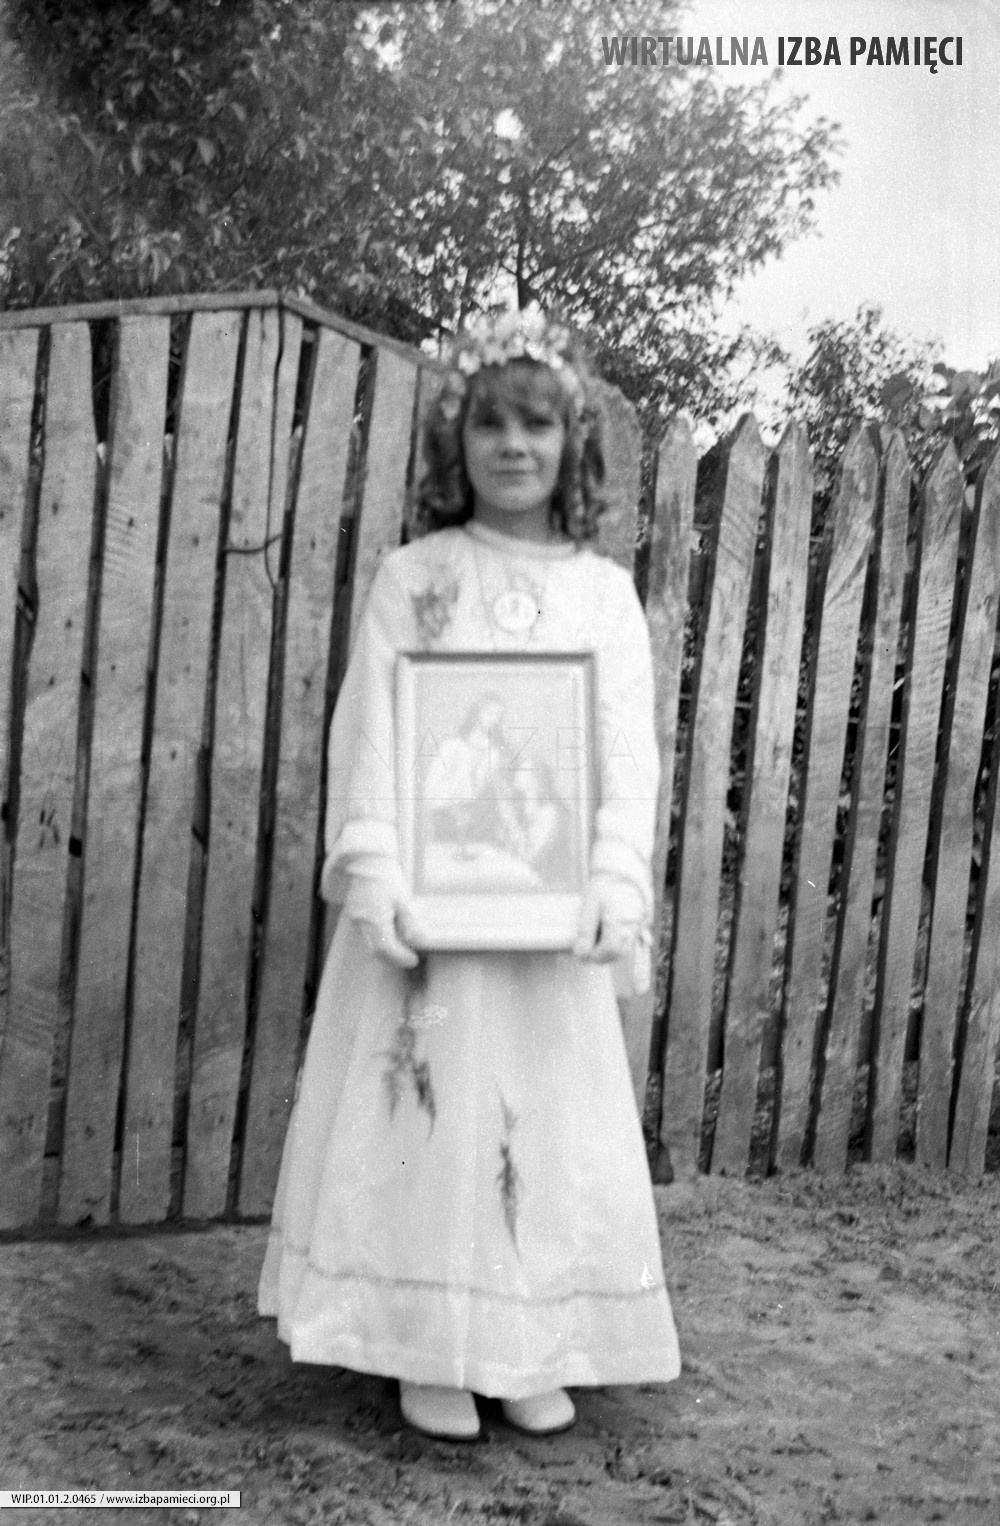 1973. Helena Purcha w dniu I Komunii z pamiątkowym świętym obrazkiem